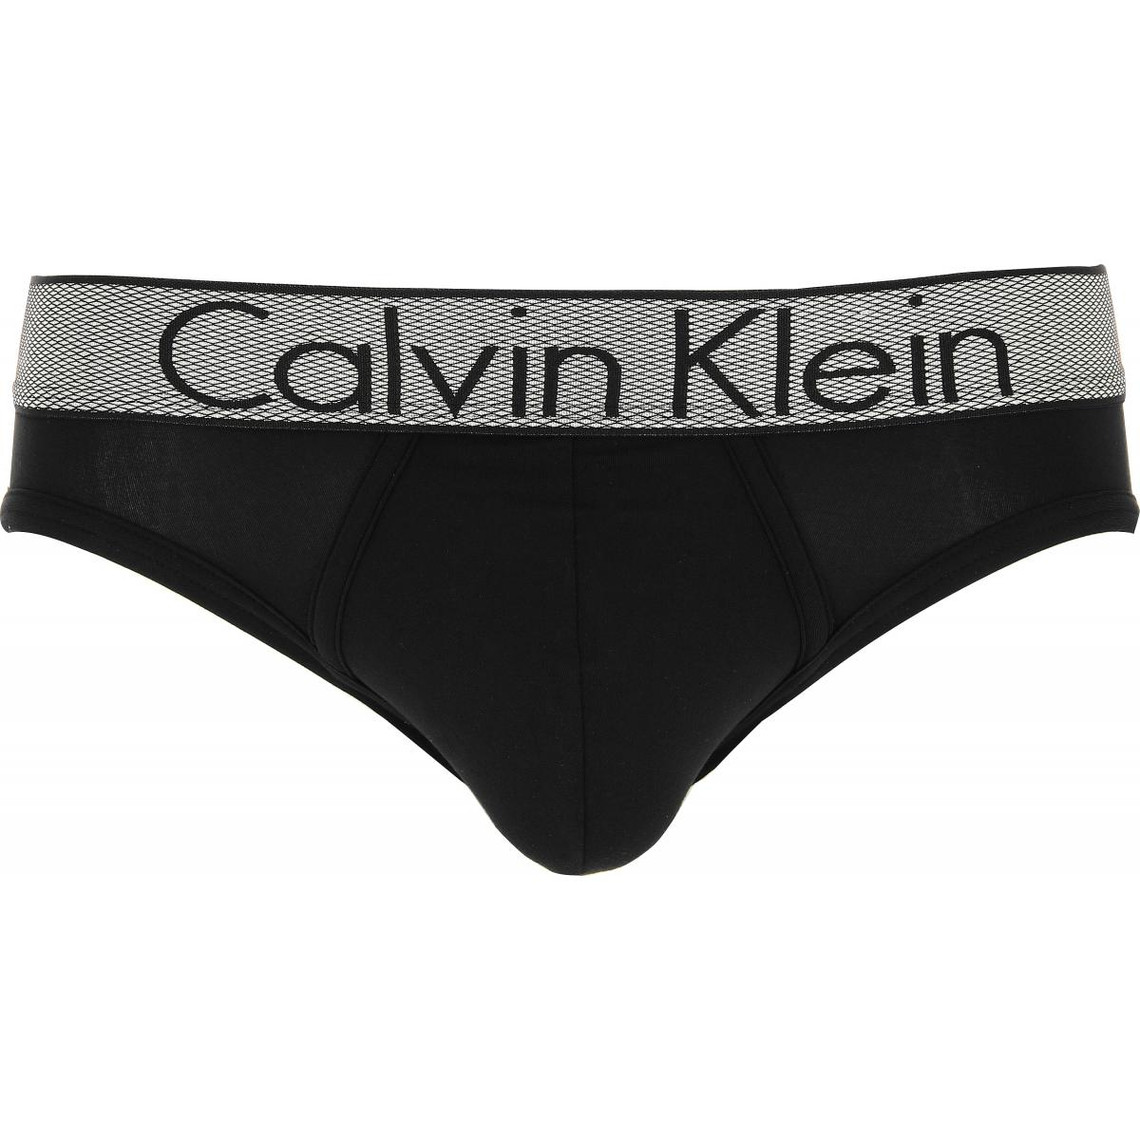 calvin klein underwear slip